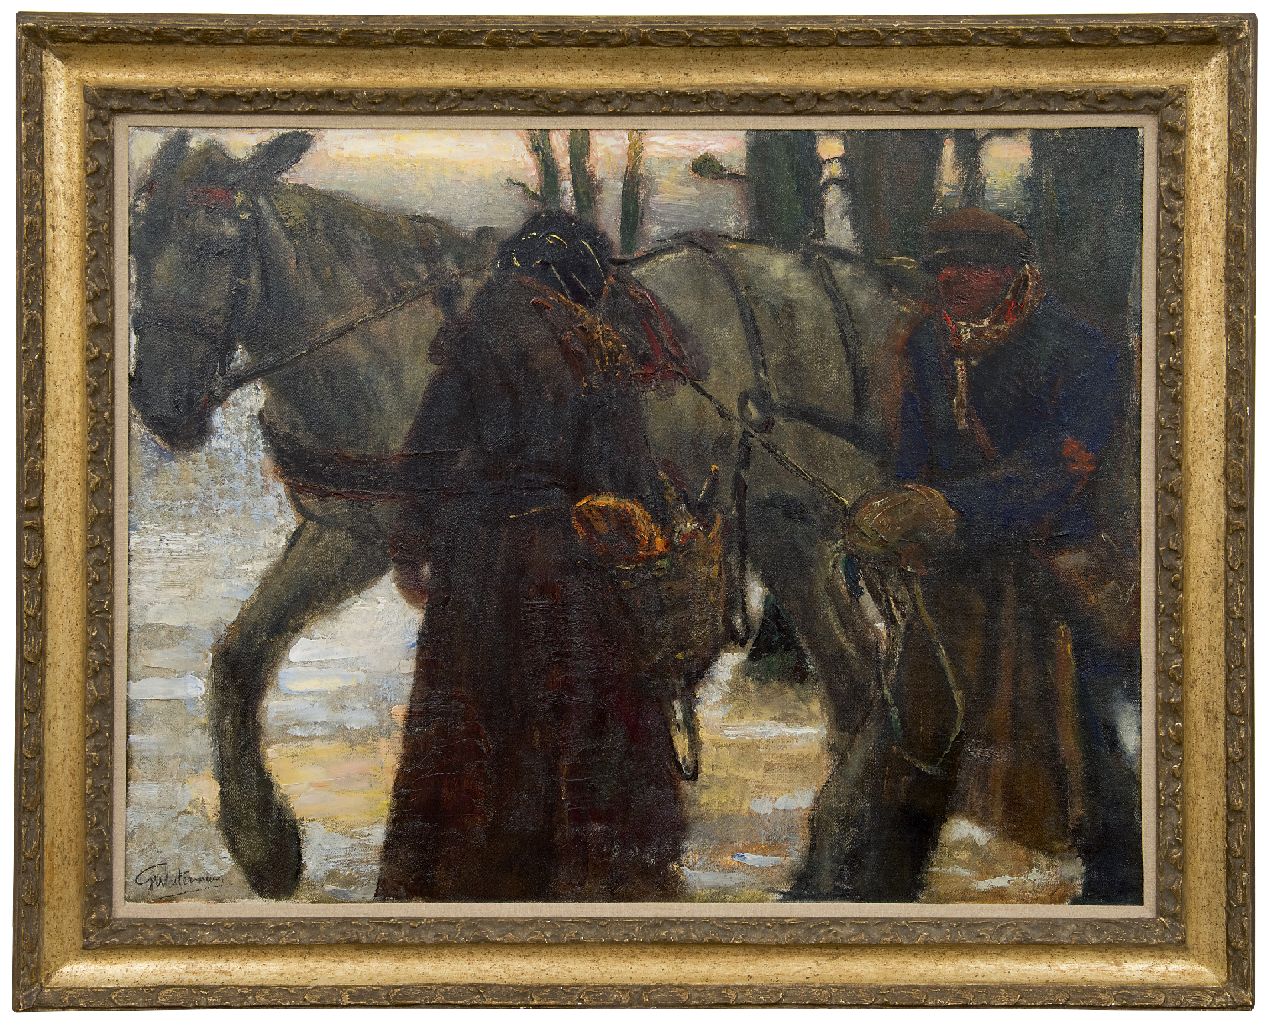 Westermann G.B.J.  | Gerhardus Bernardus Josephus 'Gerard' Westermann | Schilderijen te koop aangeboden | Figuren bij een trekpaard, olieverf op doek 77,0 x 100,0 cm, gesigneerd linksonder